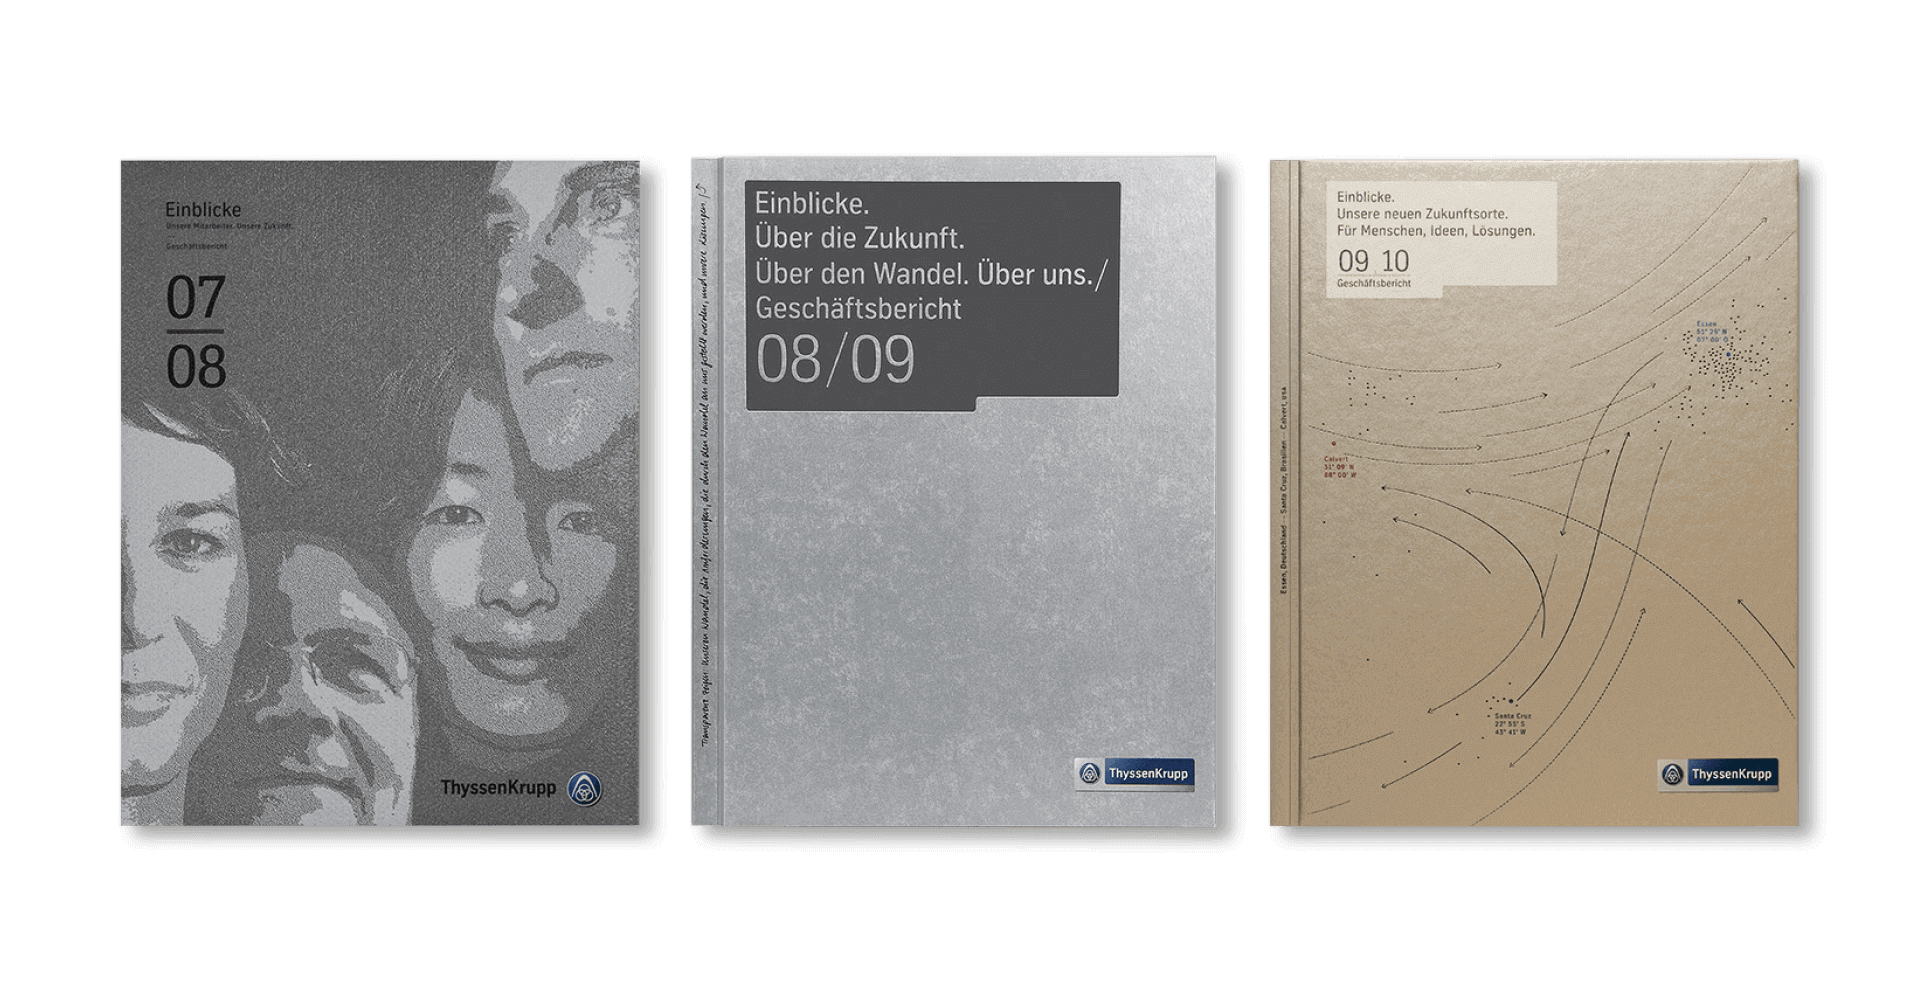 Cover von Geschäftsberichten für ThyssenKrupp von haefelinger design mit illustrationen von Menschen und grafischen Elementen